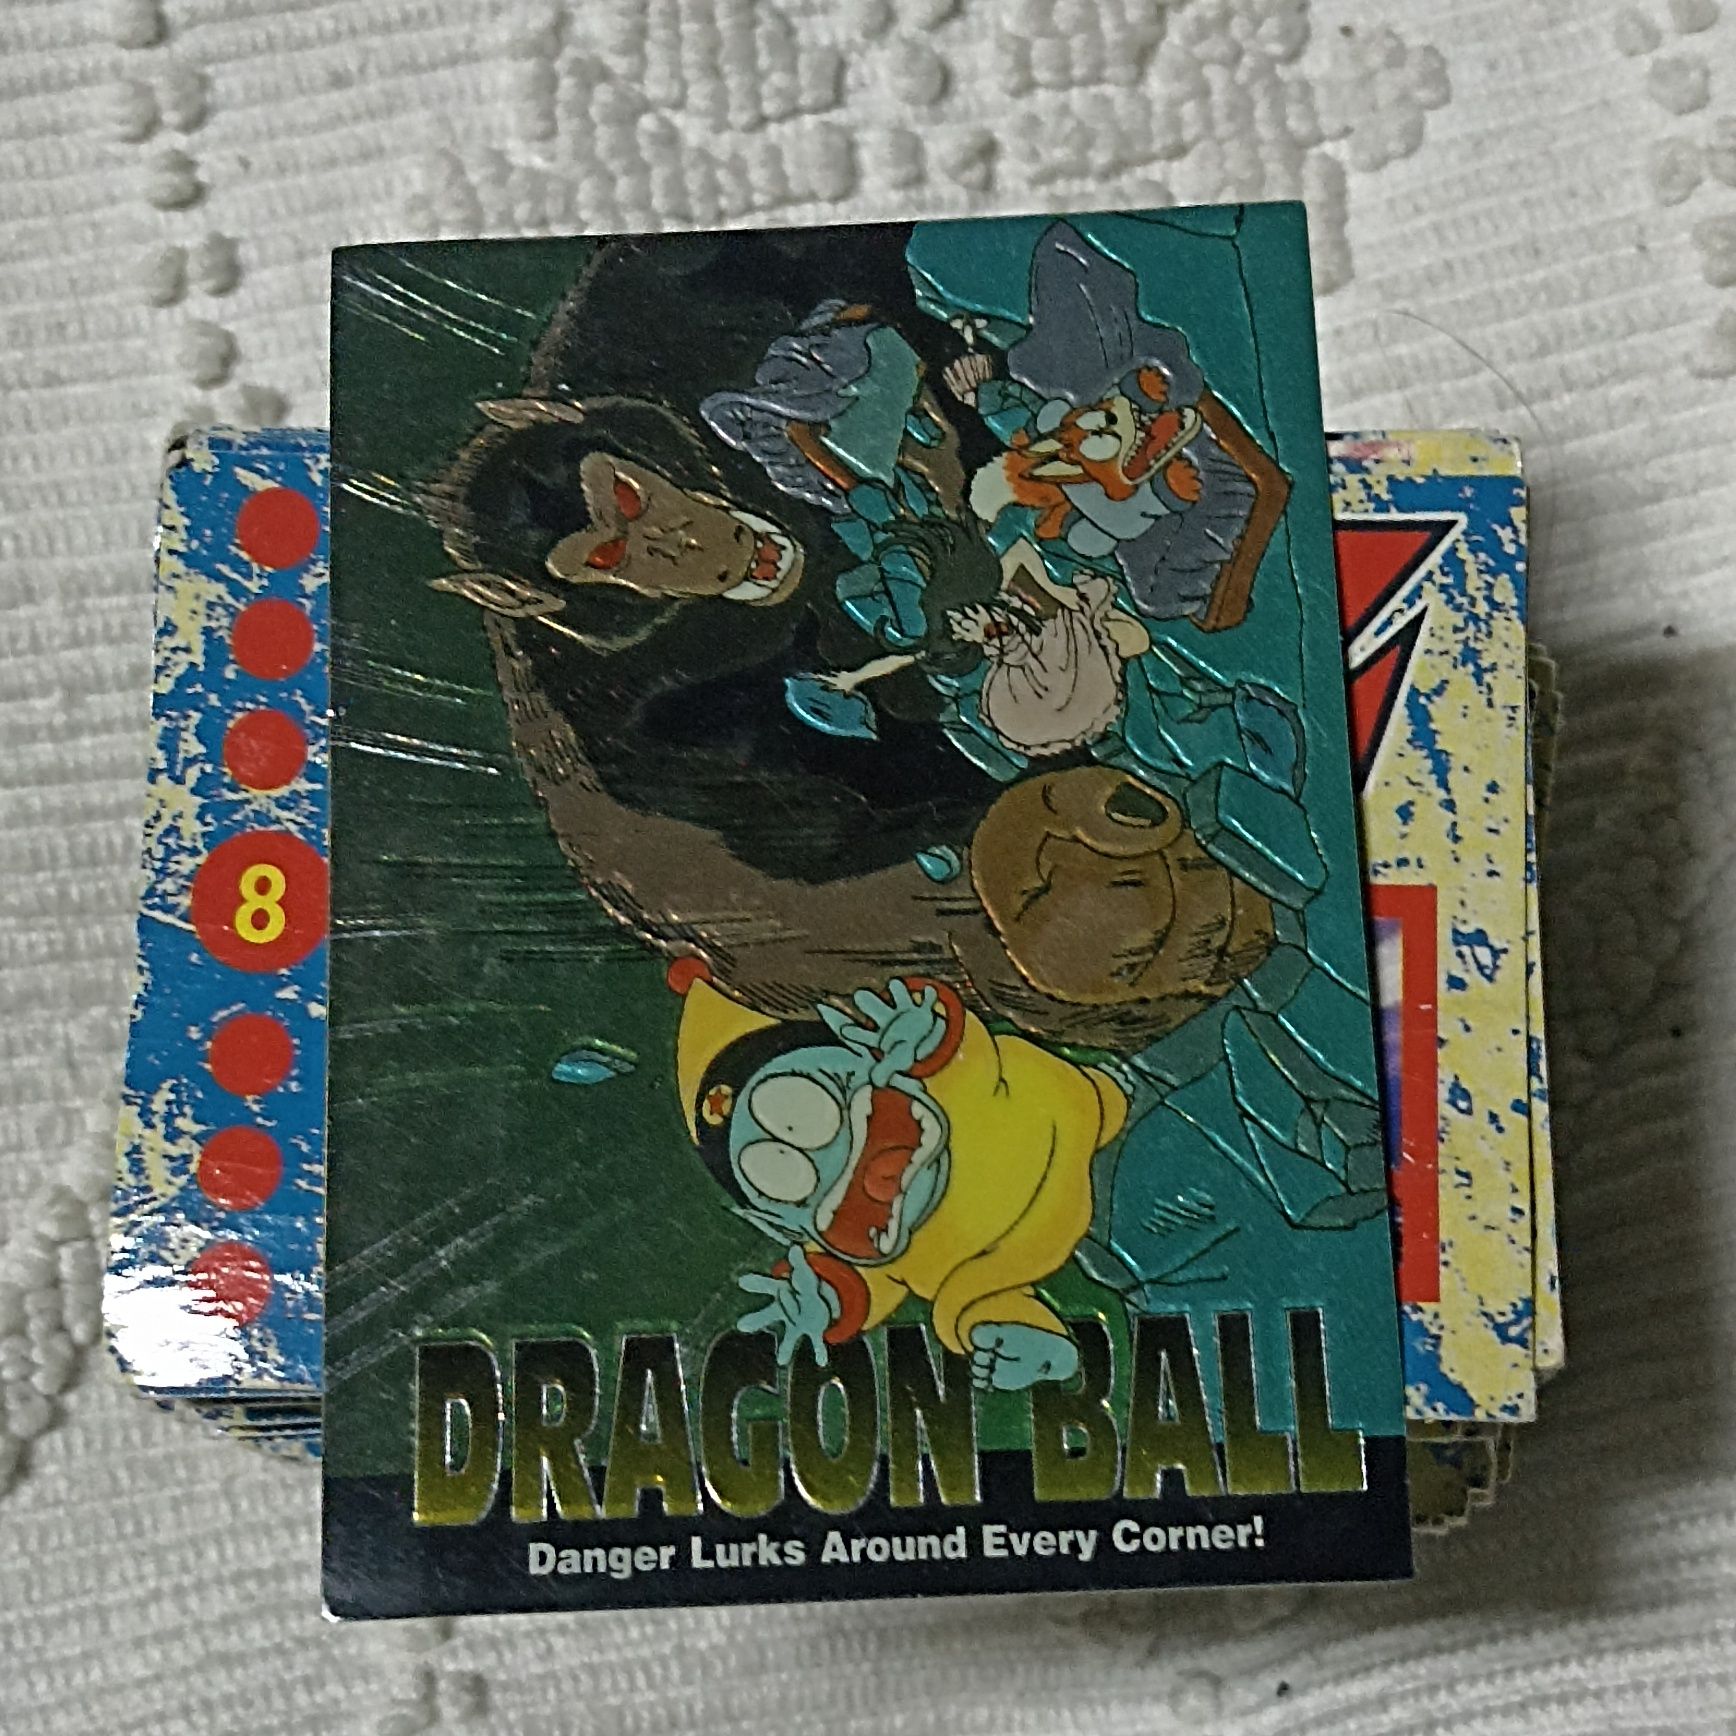 Conjunto de Cromos do DragonBall Z